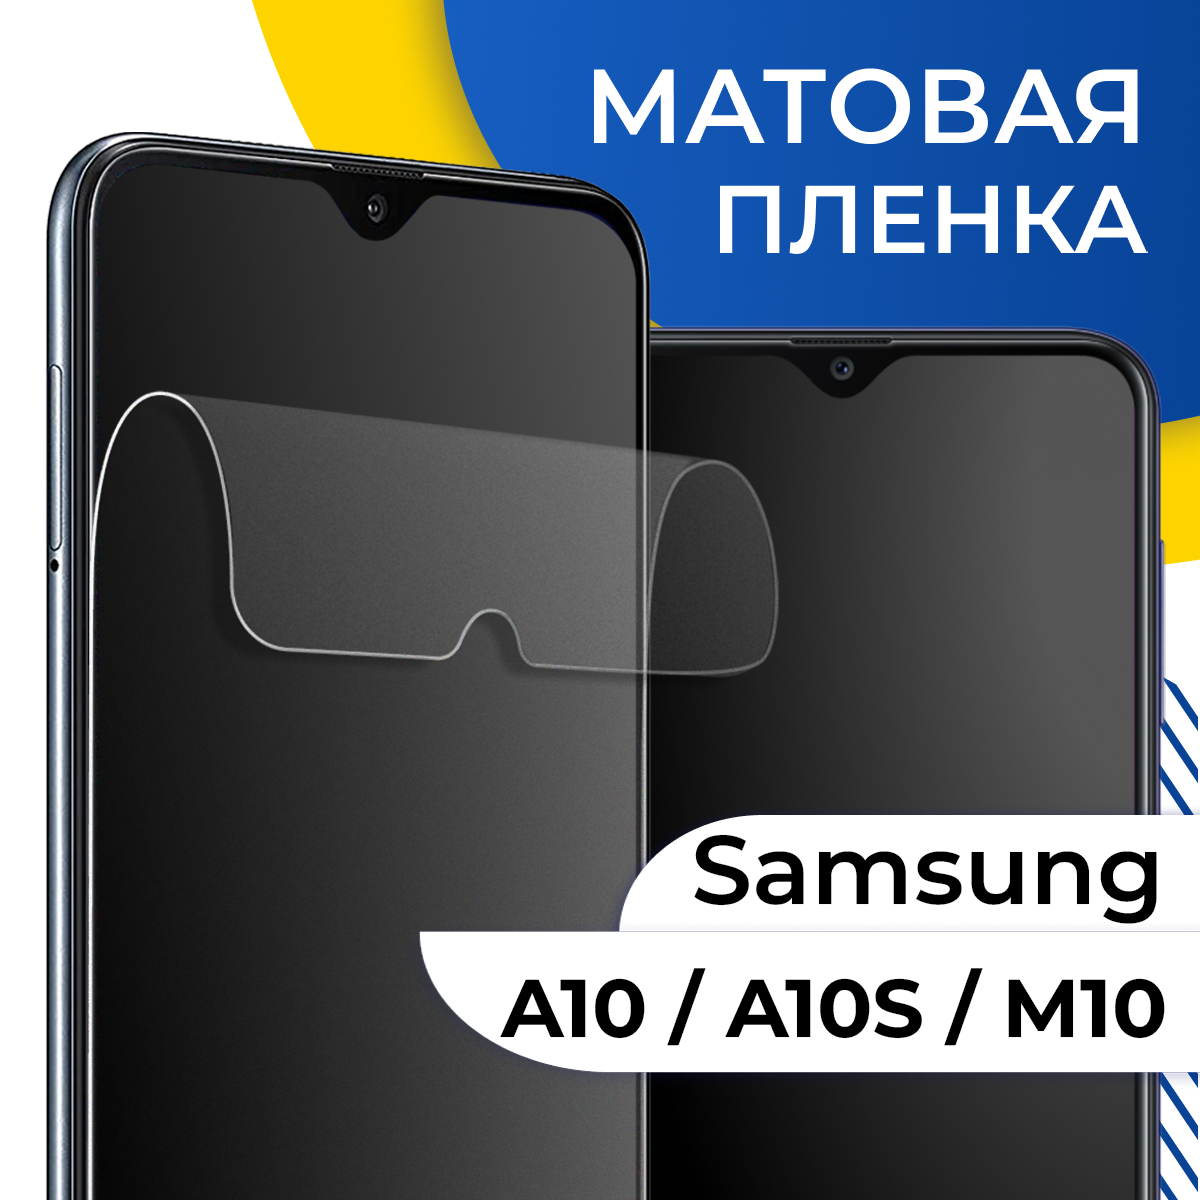 Матовая гидрогелевая пленка для телефона Samsung Galaxy A10 A10S и M10 / Самовосстанавливающаяся защитная пленка на Самсунг Галакси А10 А10С и М10